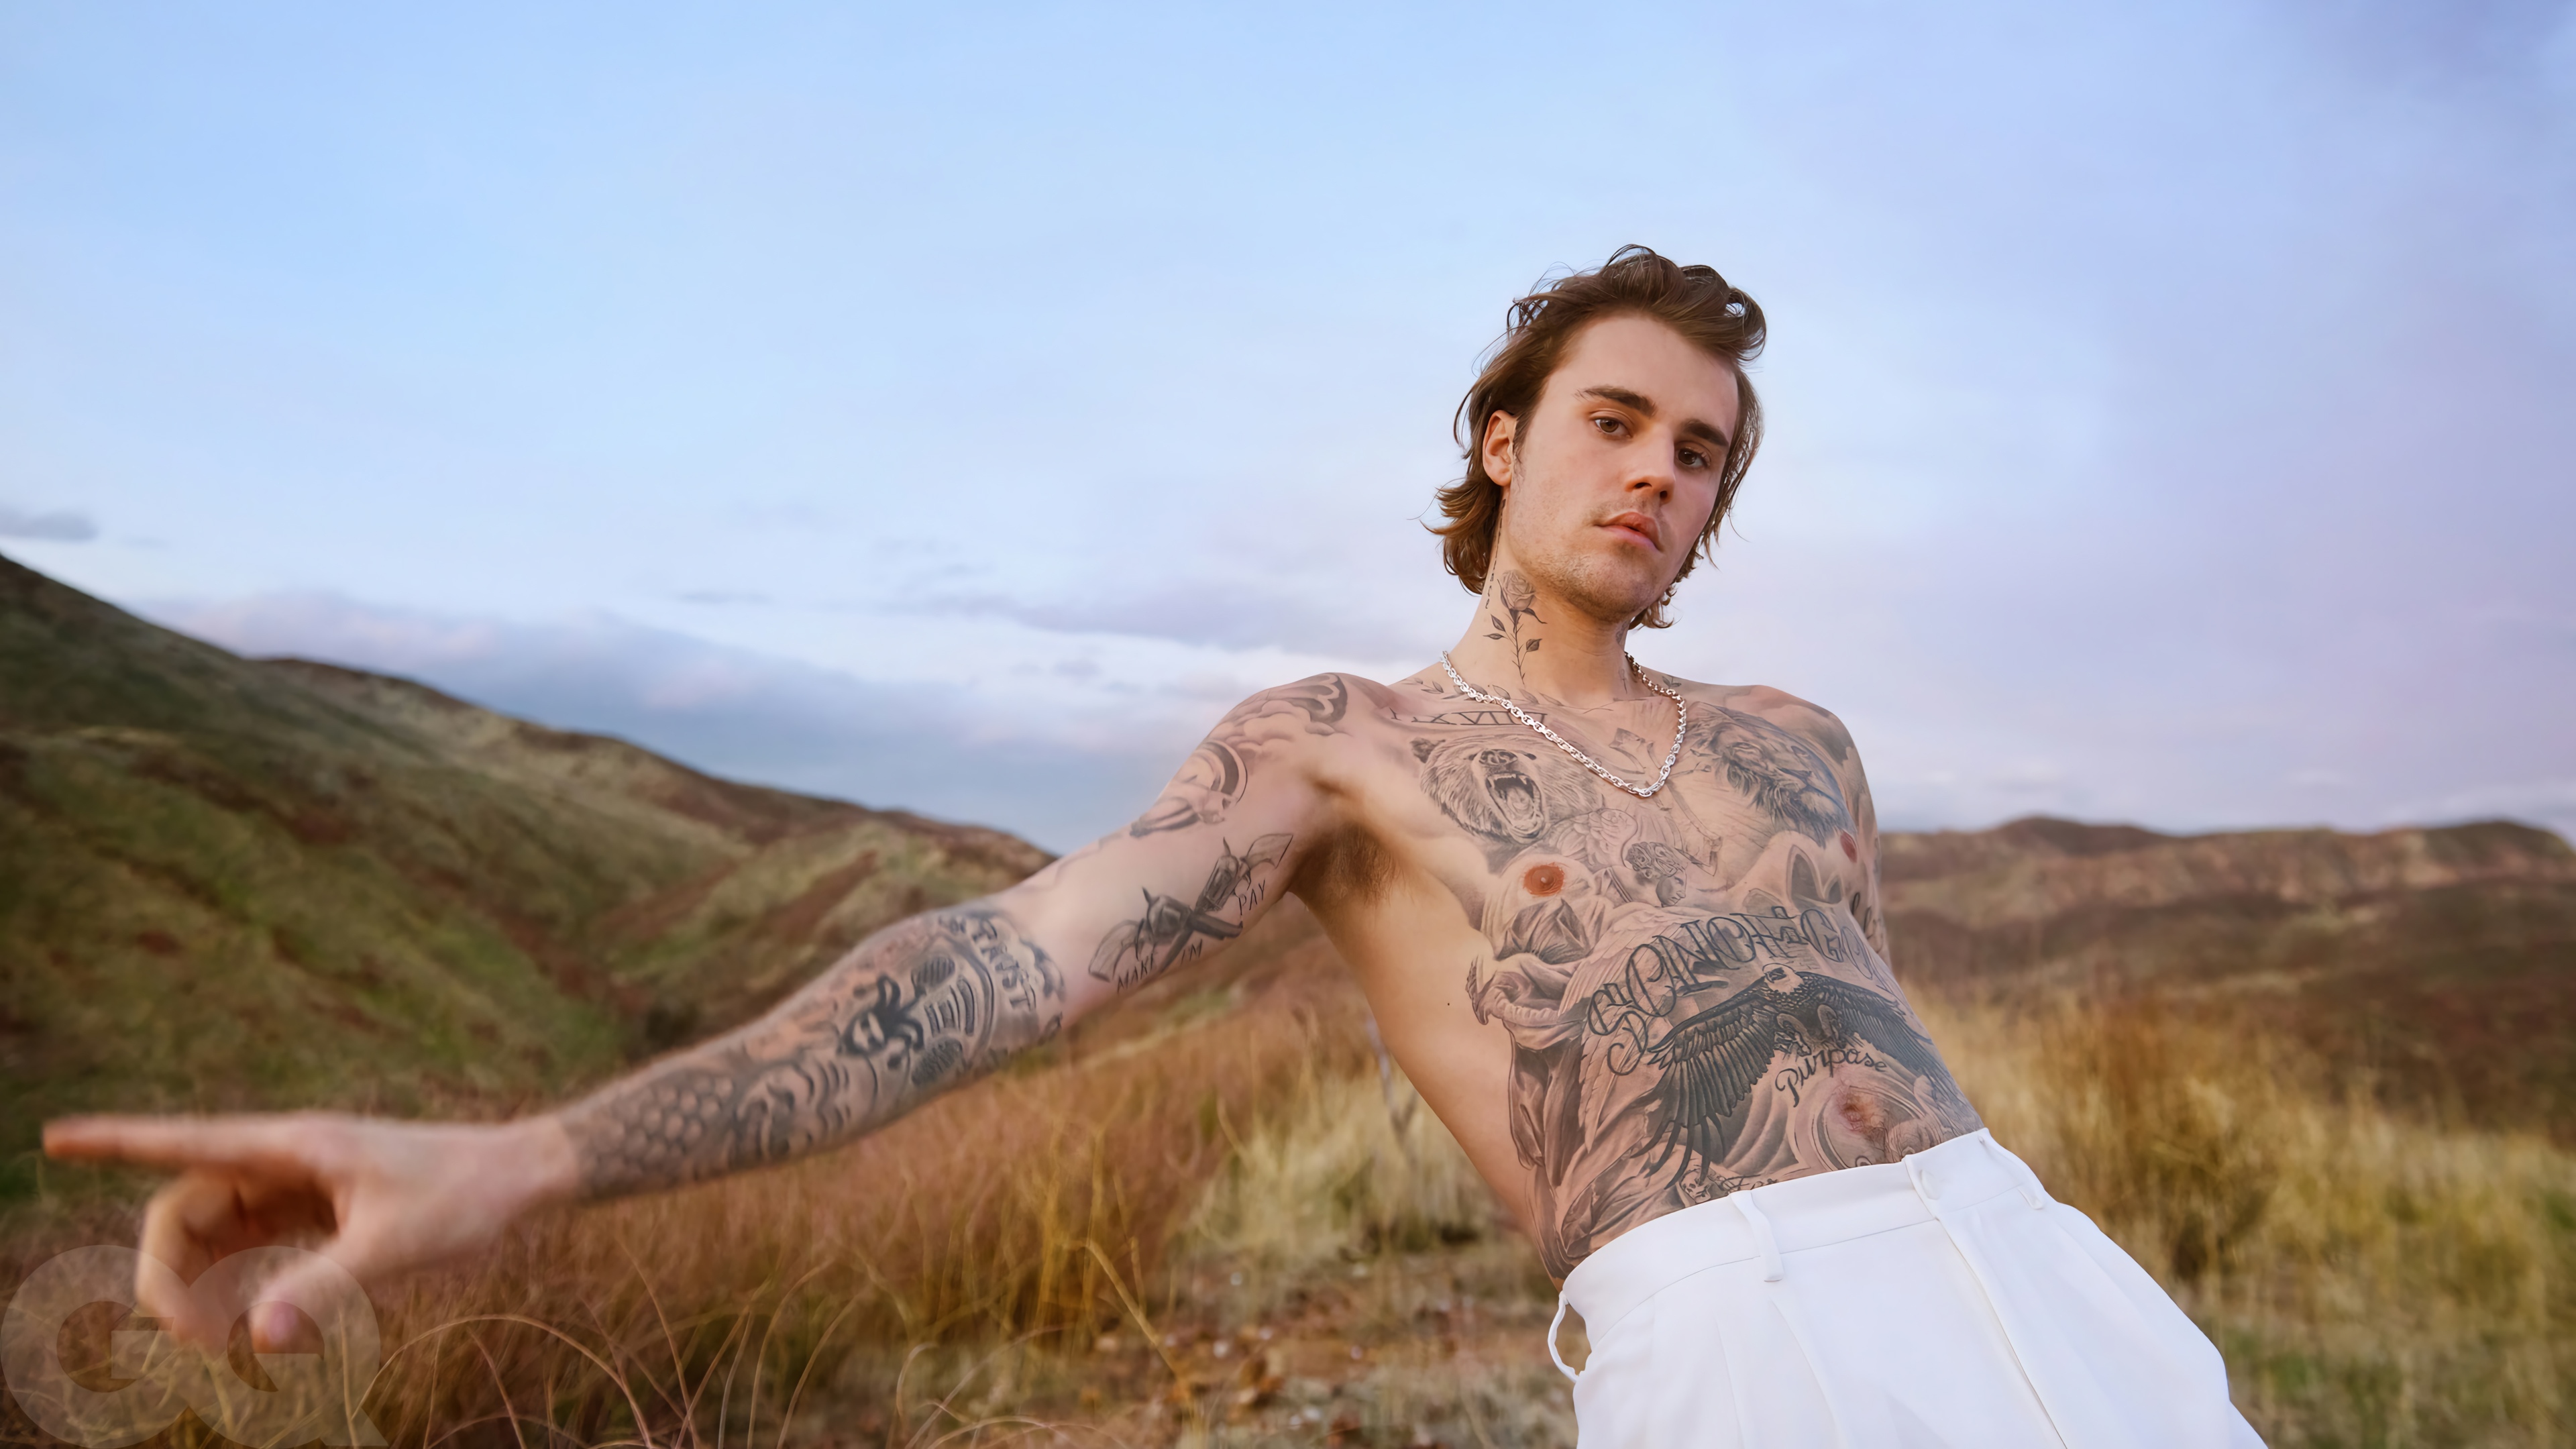 Fondos de pantalla Justin Bieber with tatoos without shirt